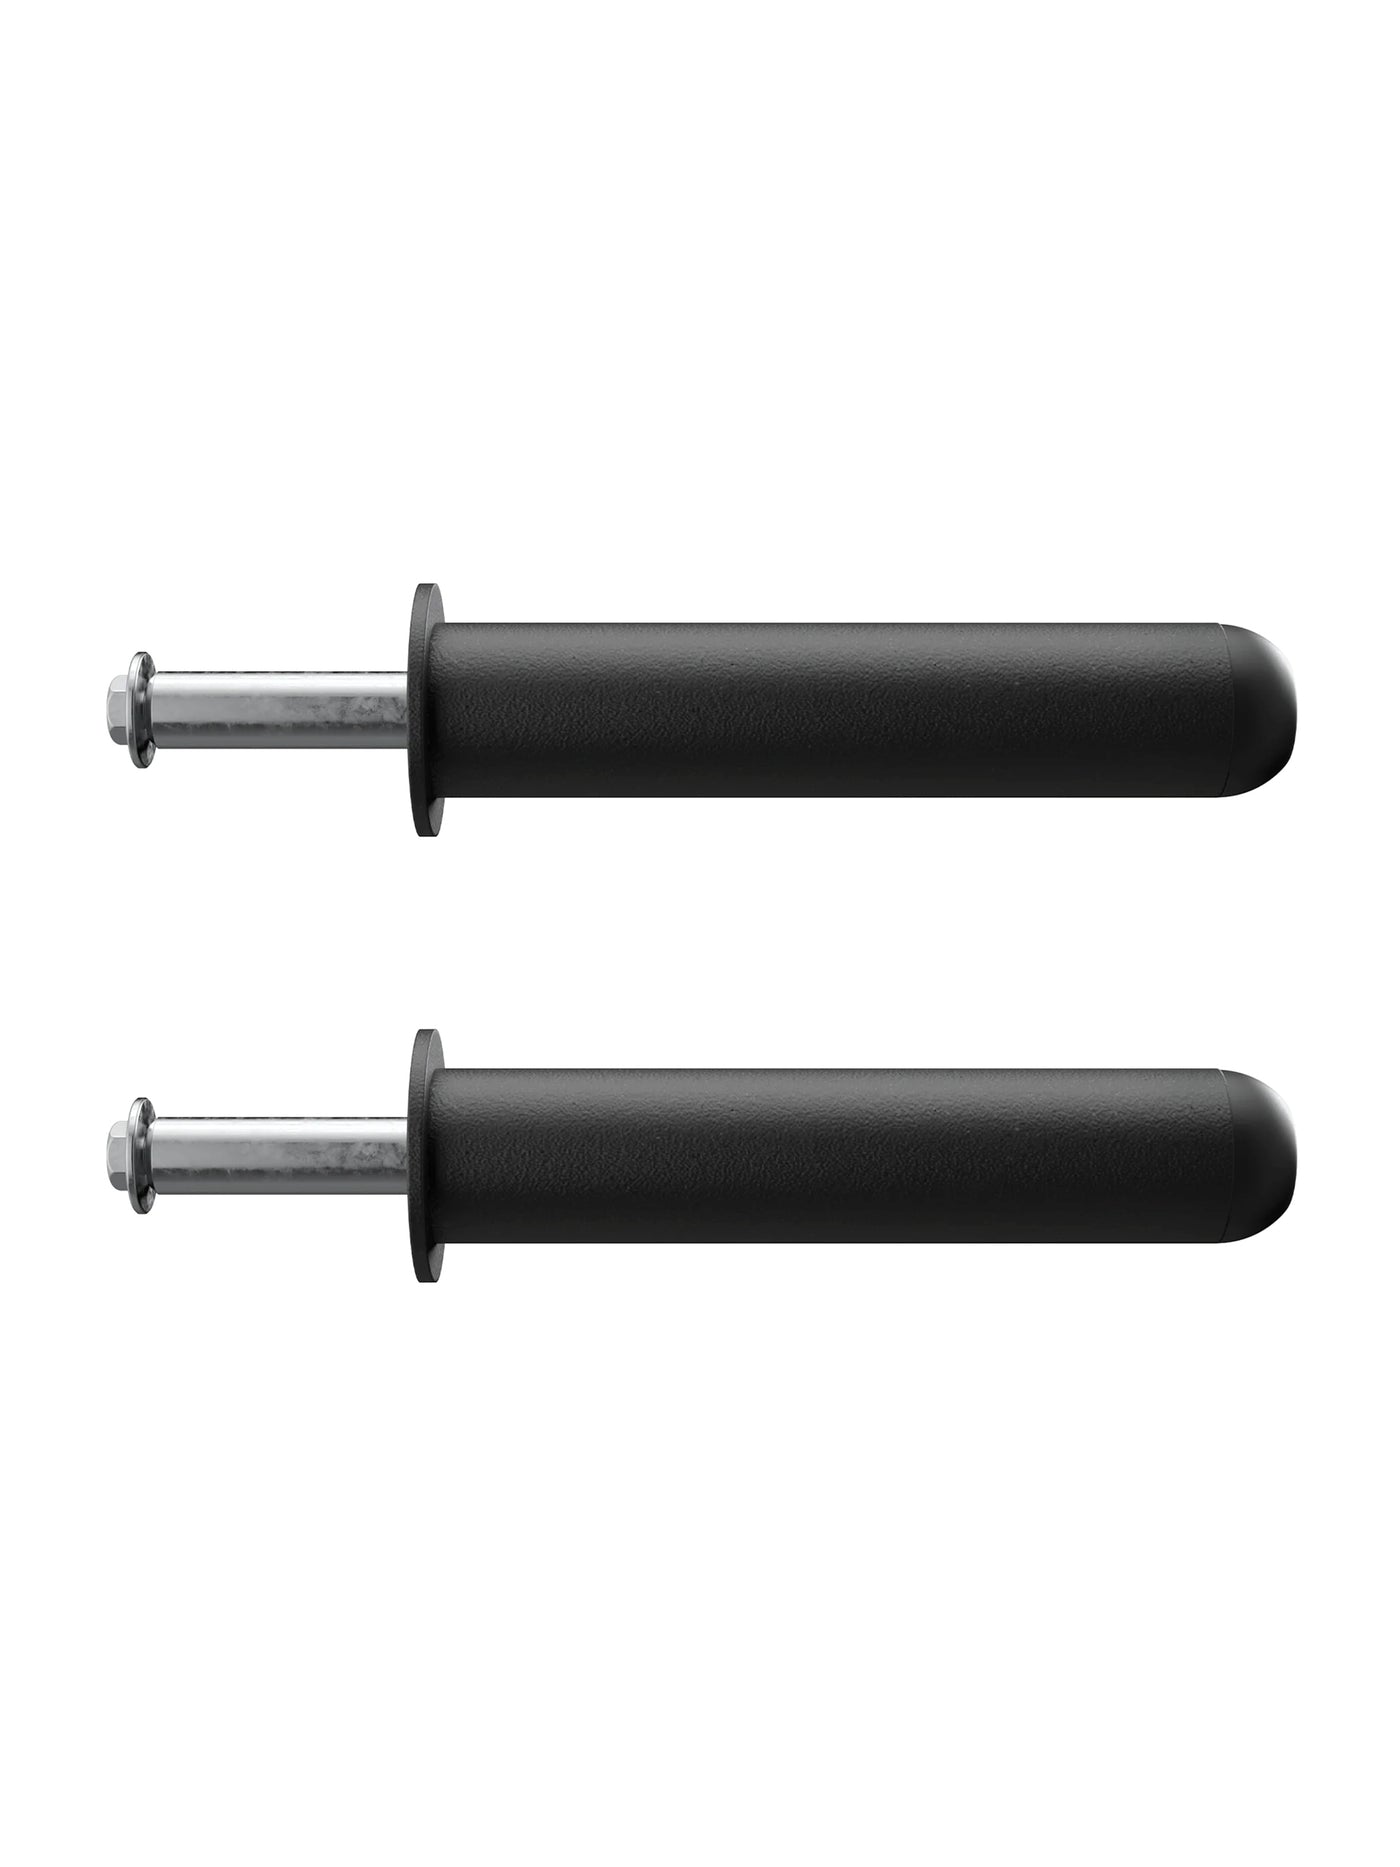 Zubehör Gewichts-Pins für die R7 Serie: Paar | 20 oder 30 cm | Ordnung im Gym | #size_20-cm